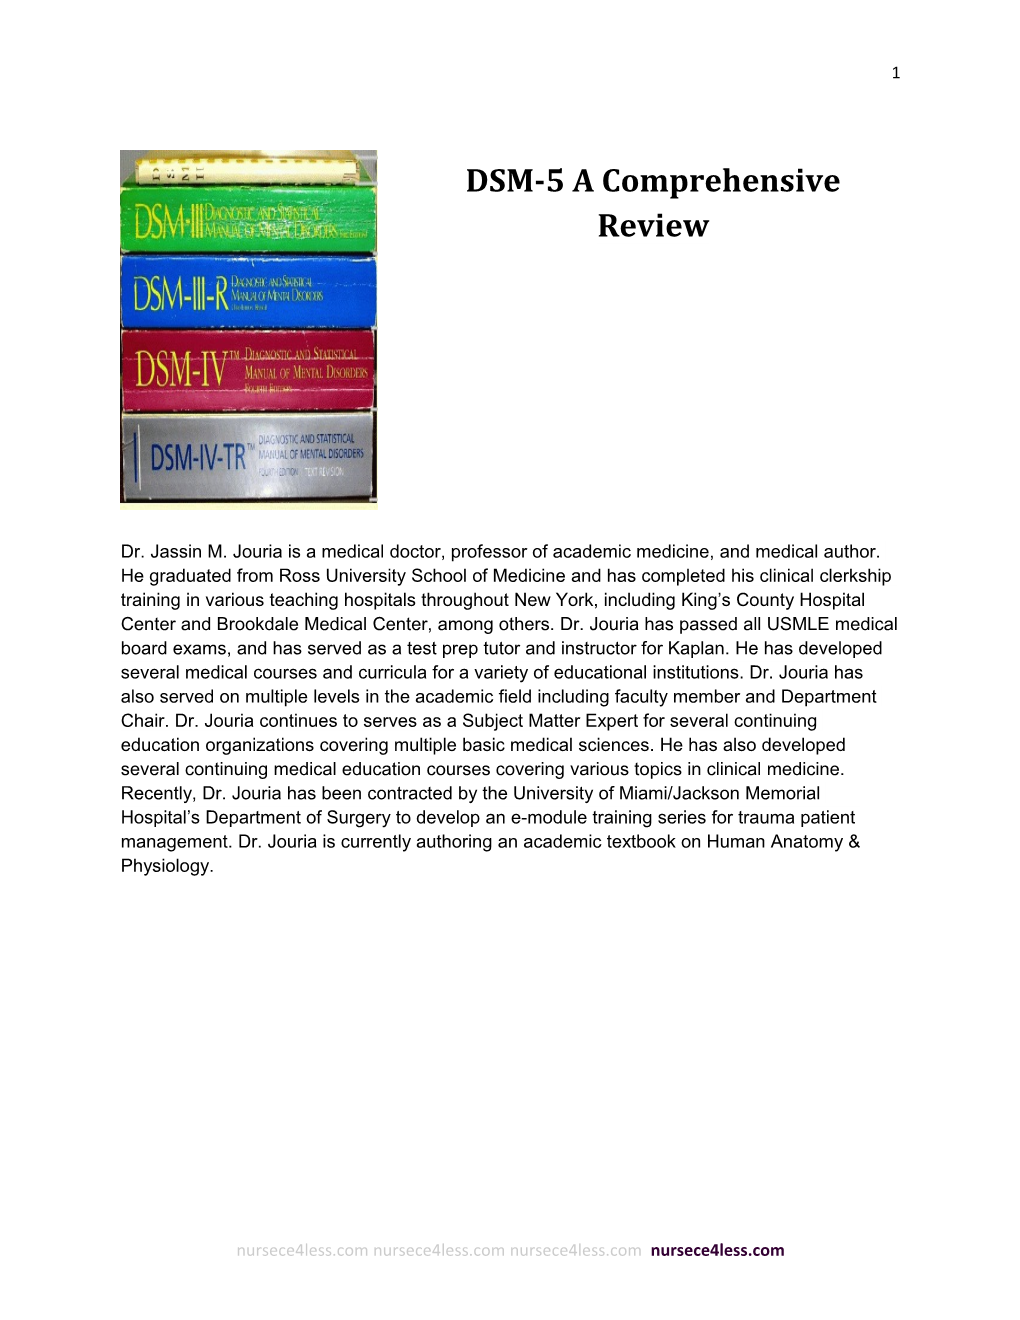 DSM-5 a Comprehensive Review